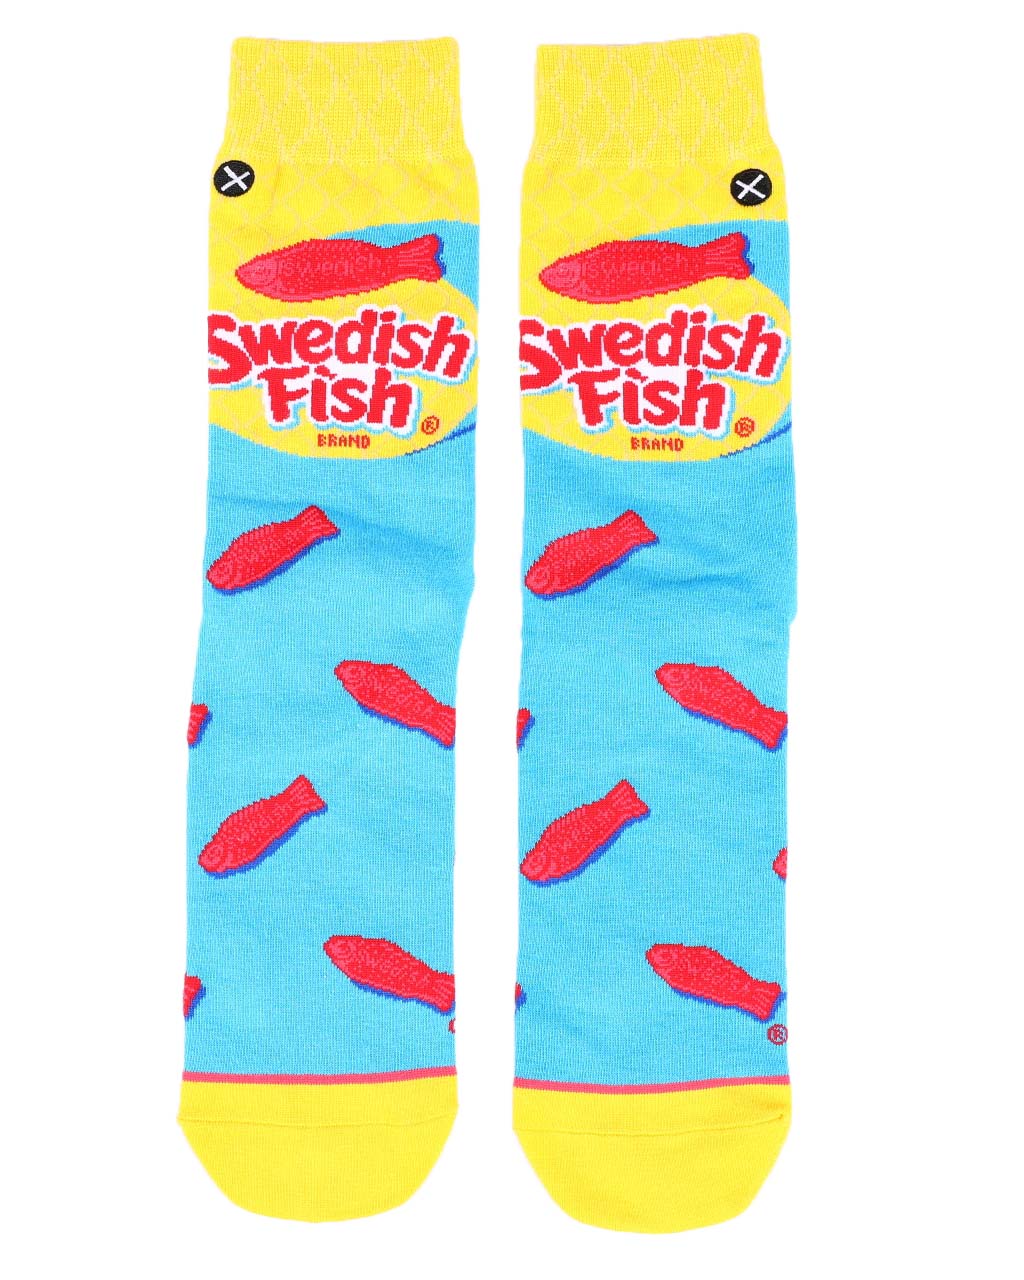 ODD SOX - Swedish Fish Crew Socks | Women's - Knock Your Socks Off